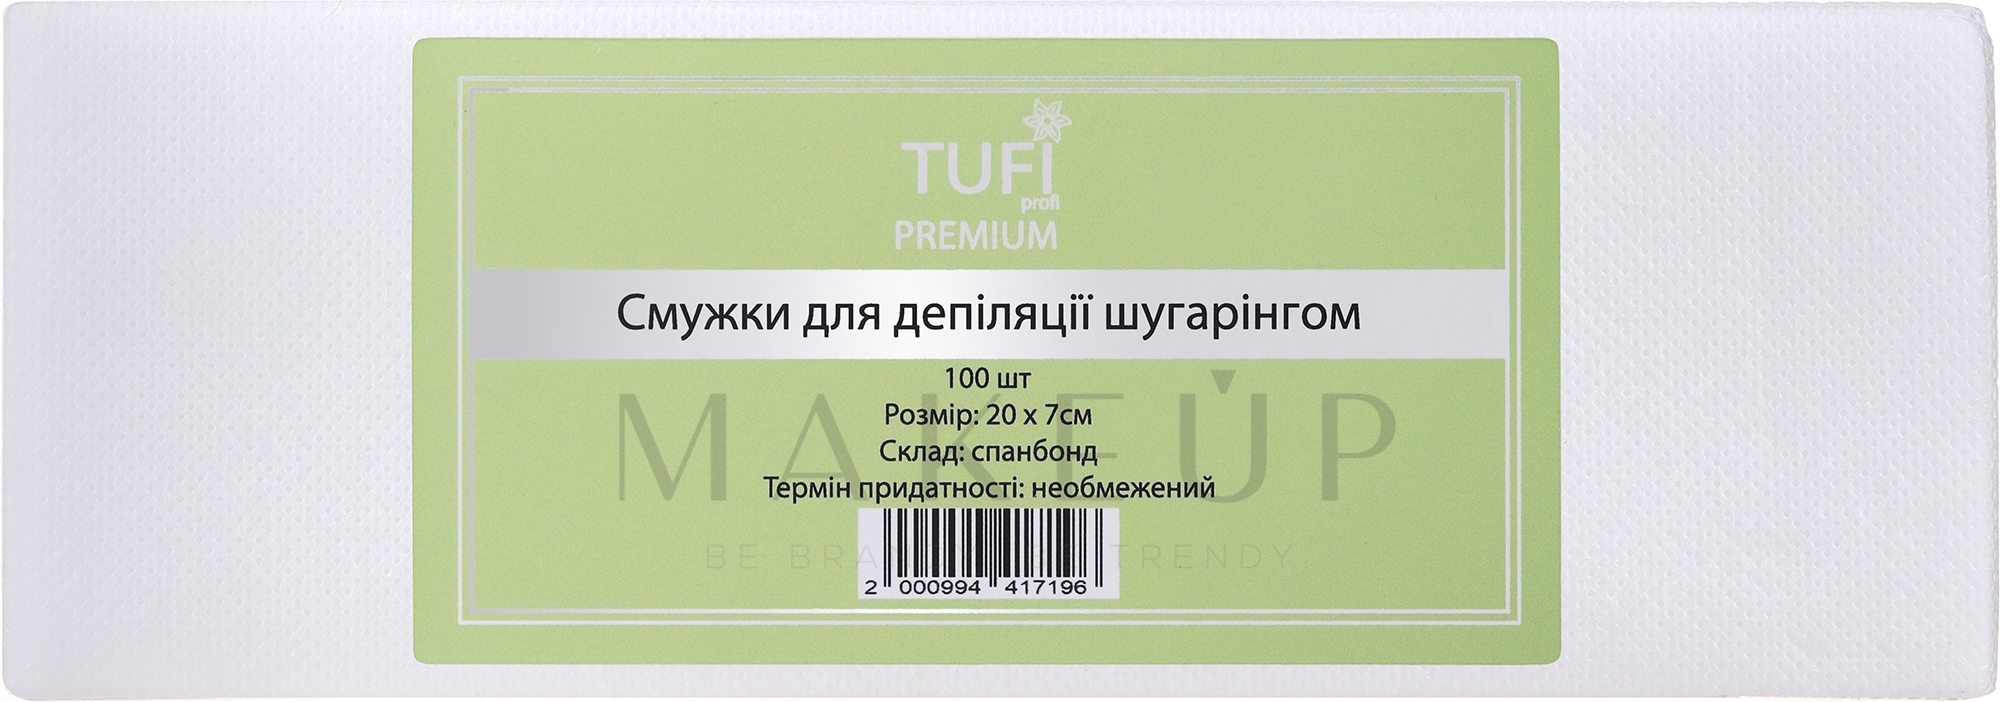 Enthaarungsstreifen mit Sugaring 20x7 cm - Tufi Profi Premium — Bild 100 St.